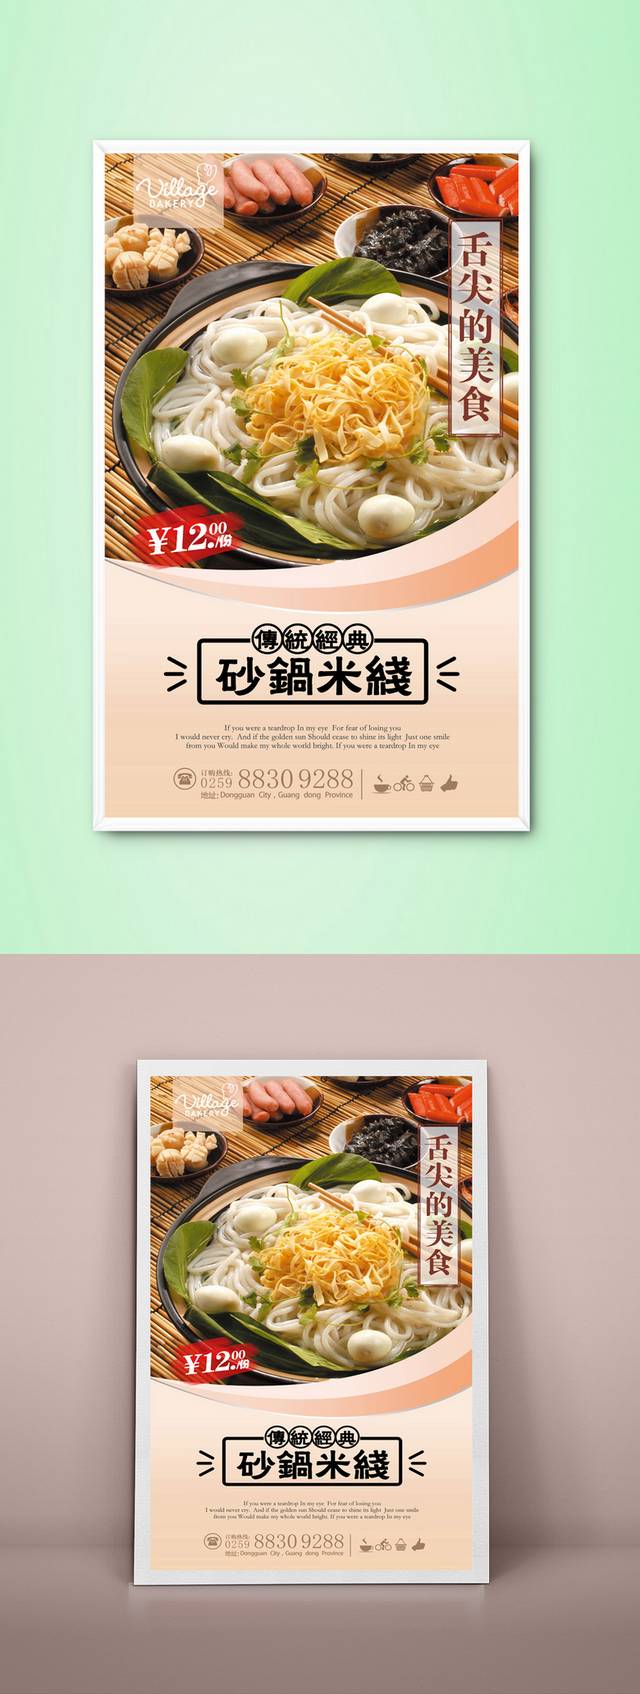 高清砂锅米线宣传海报设计PSD